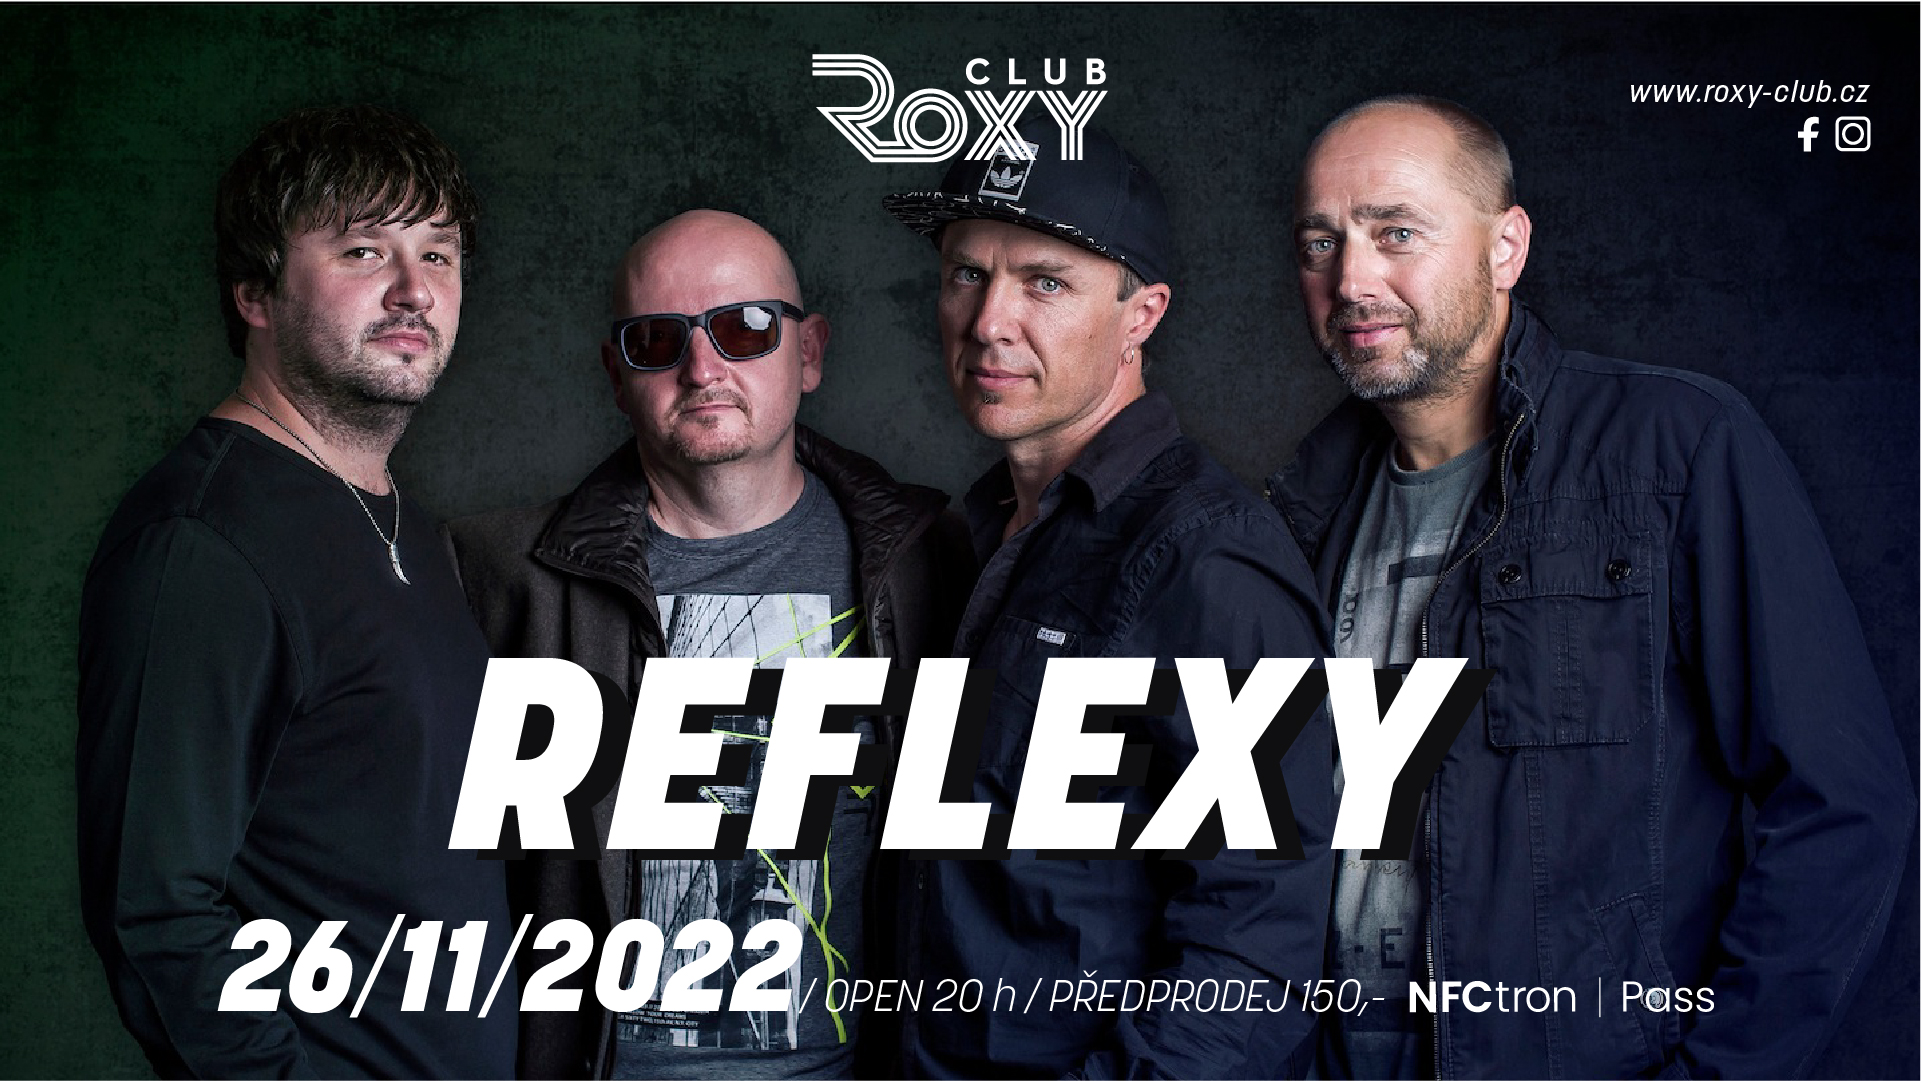 Reflexy – Roxy Club Třebíč